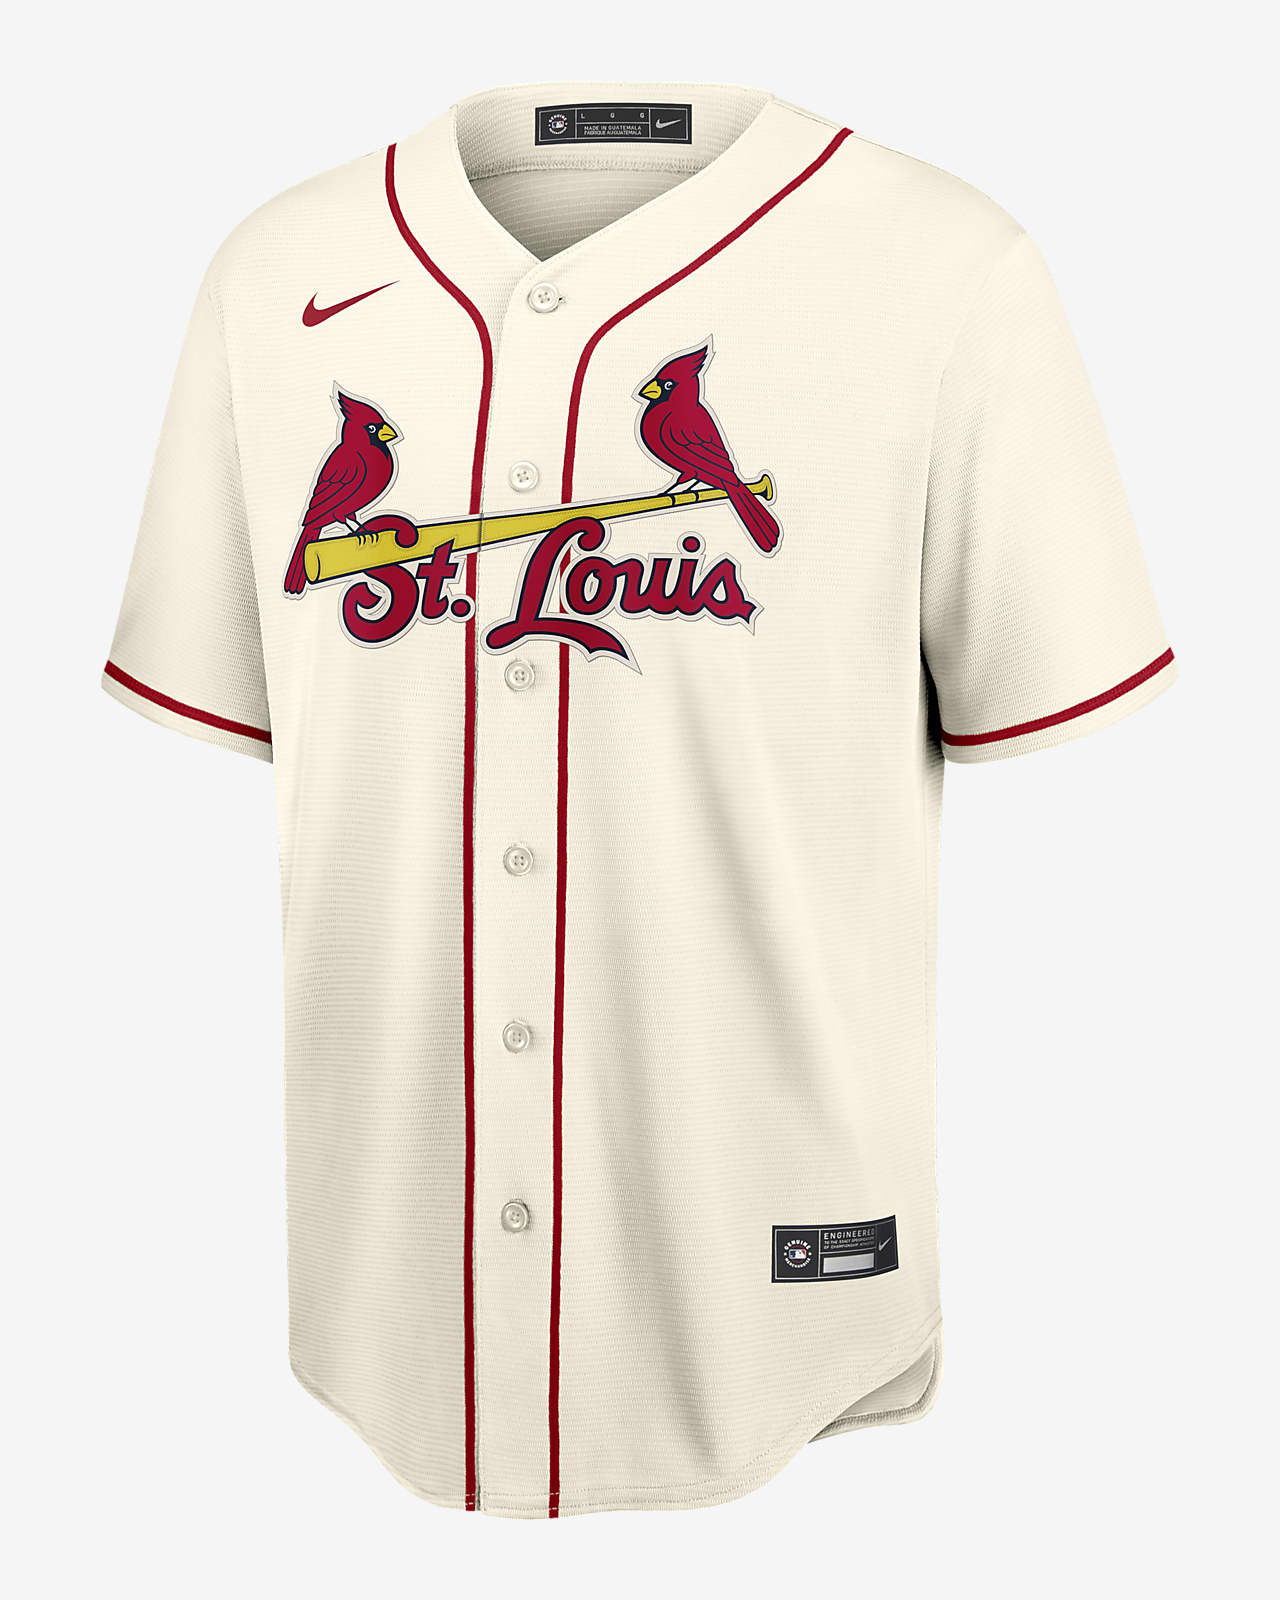 cardinals shirt